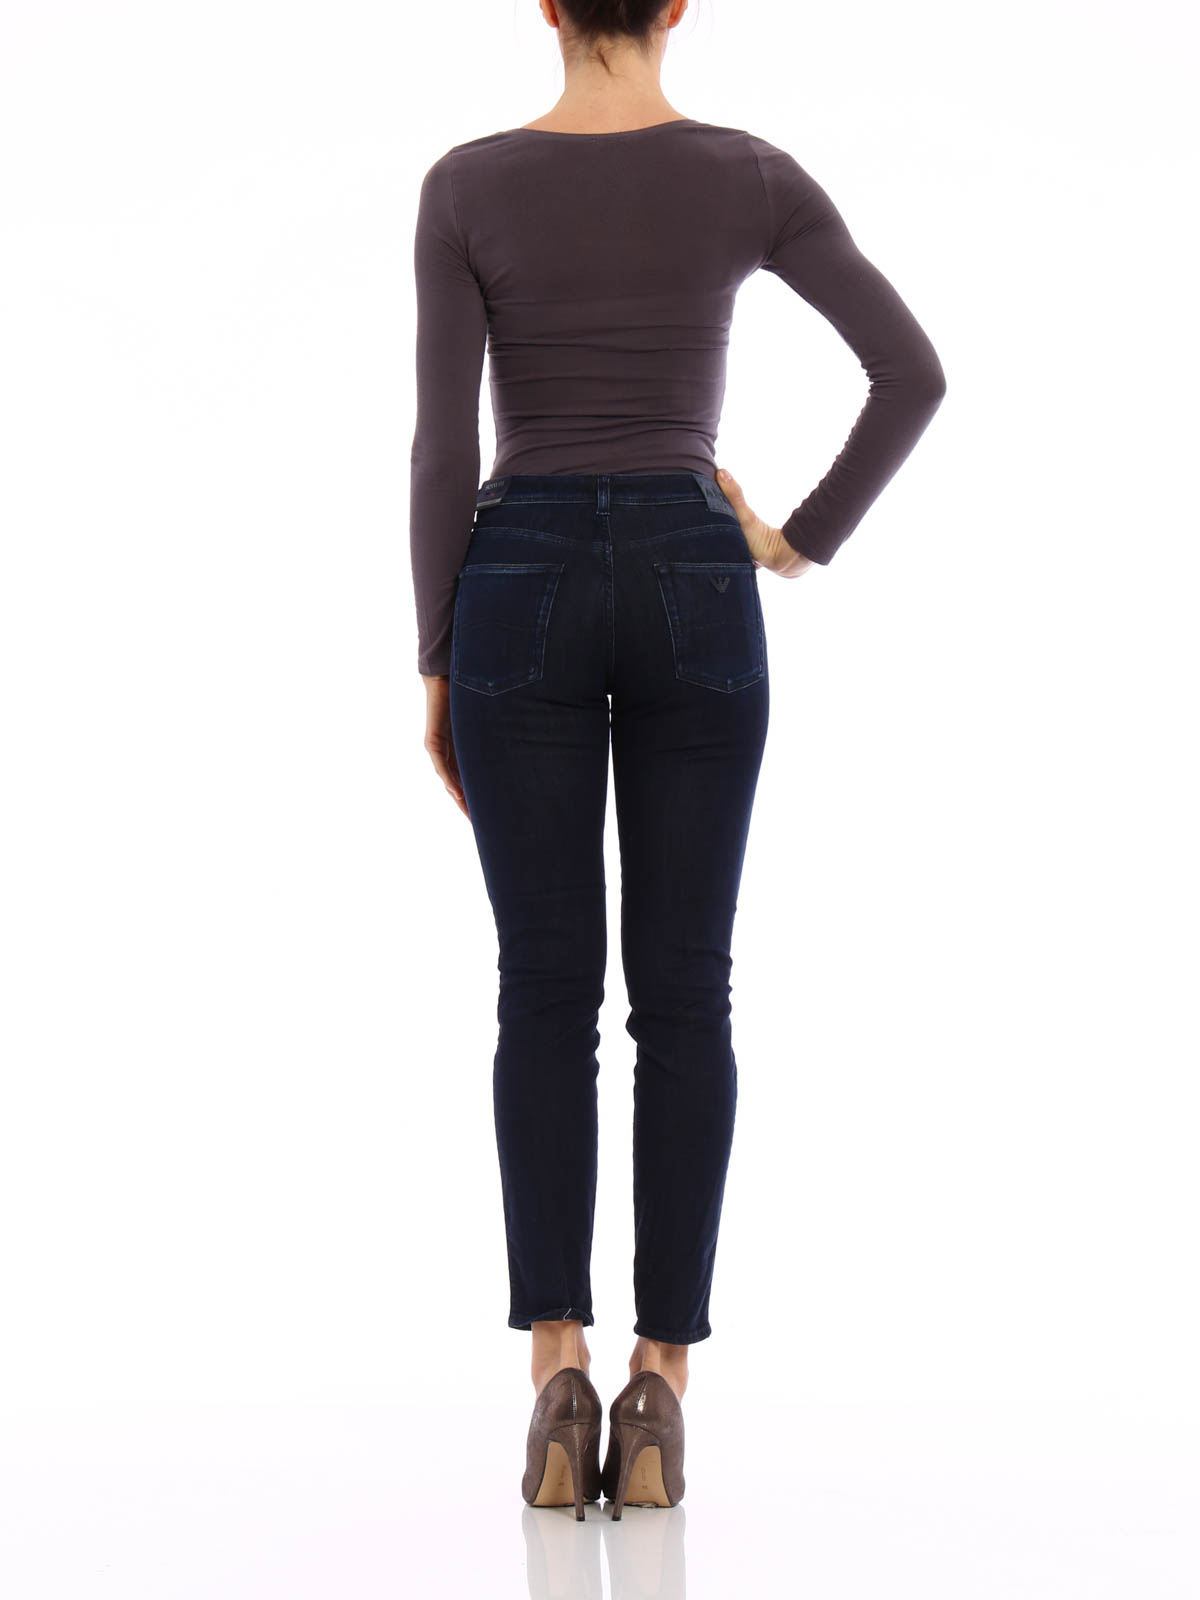 armani jeans shop online